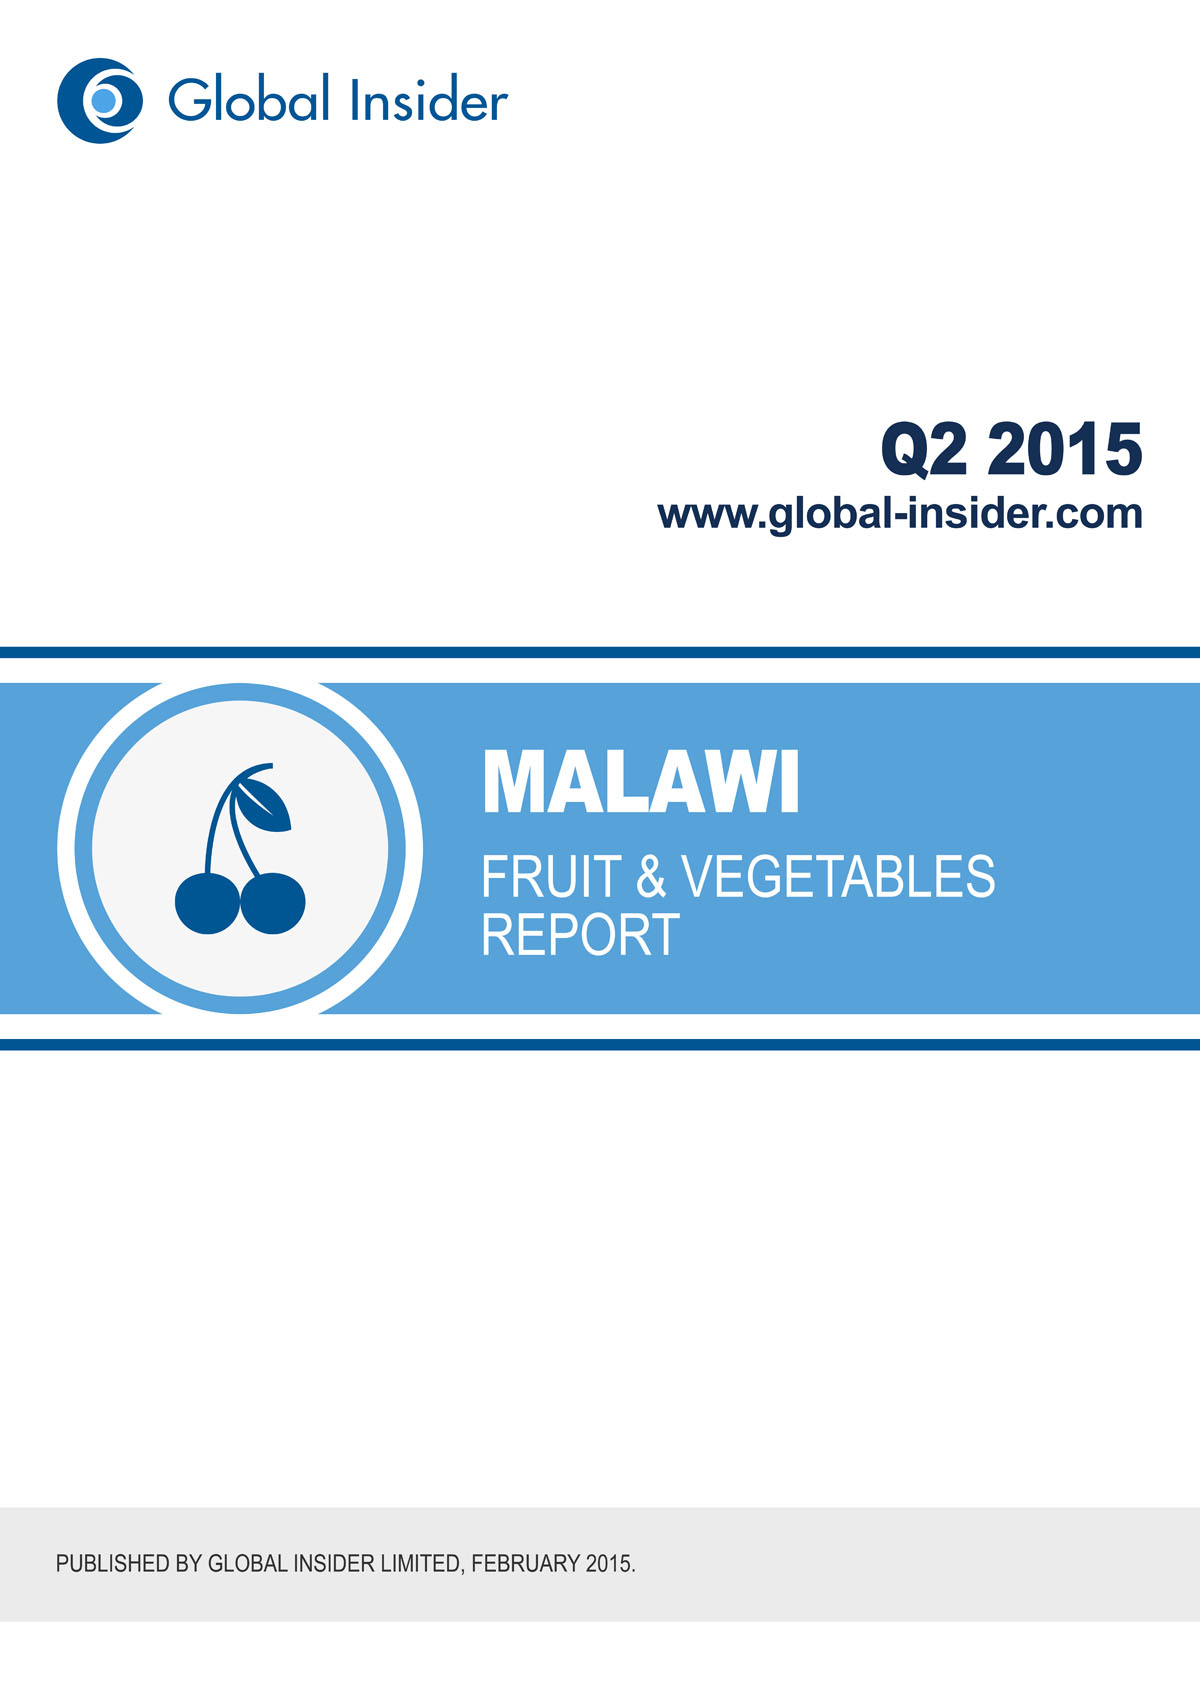 Malawi Fruit & Vegetables Report